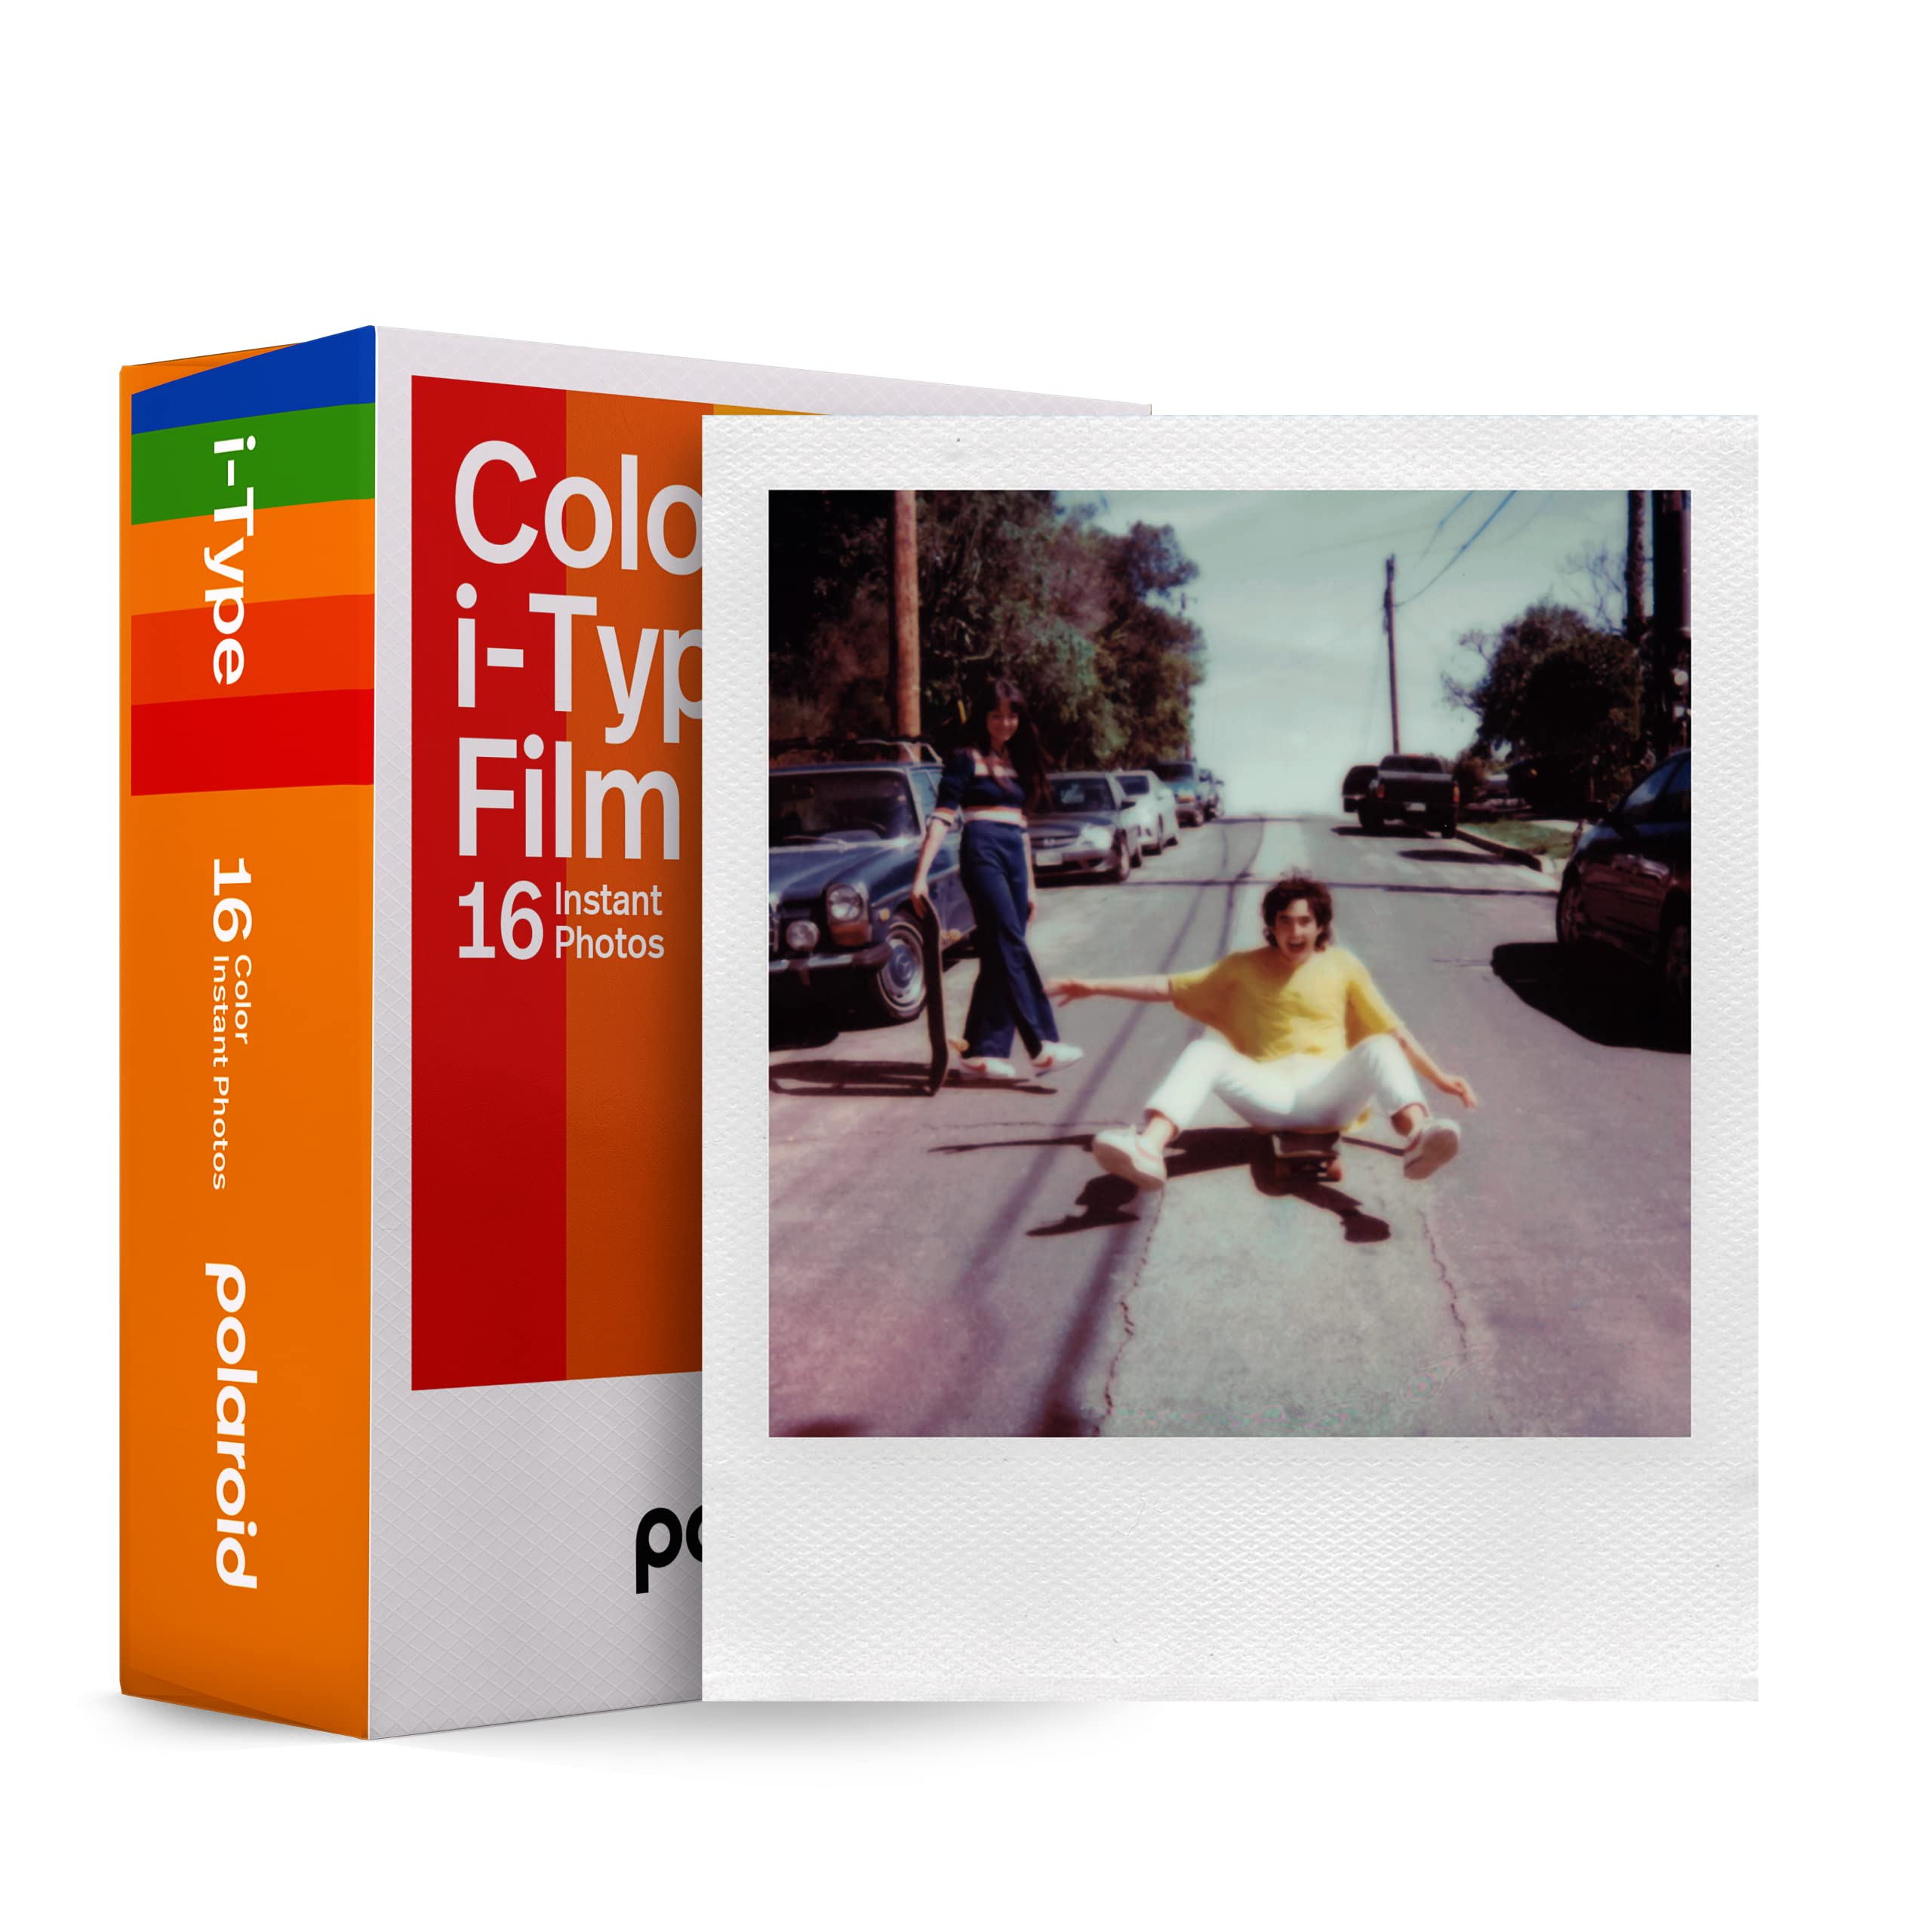 Pack double de films couleur i-Type